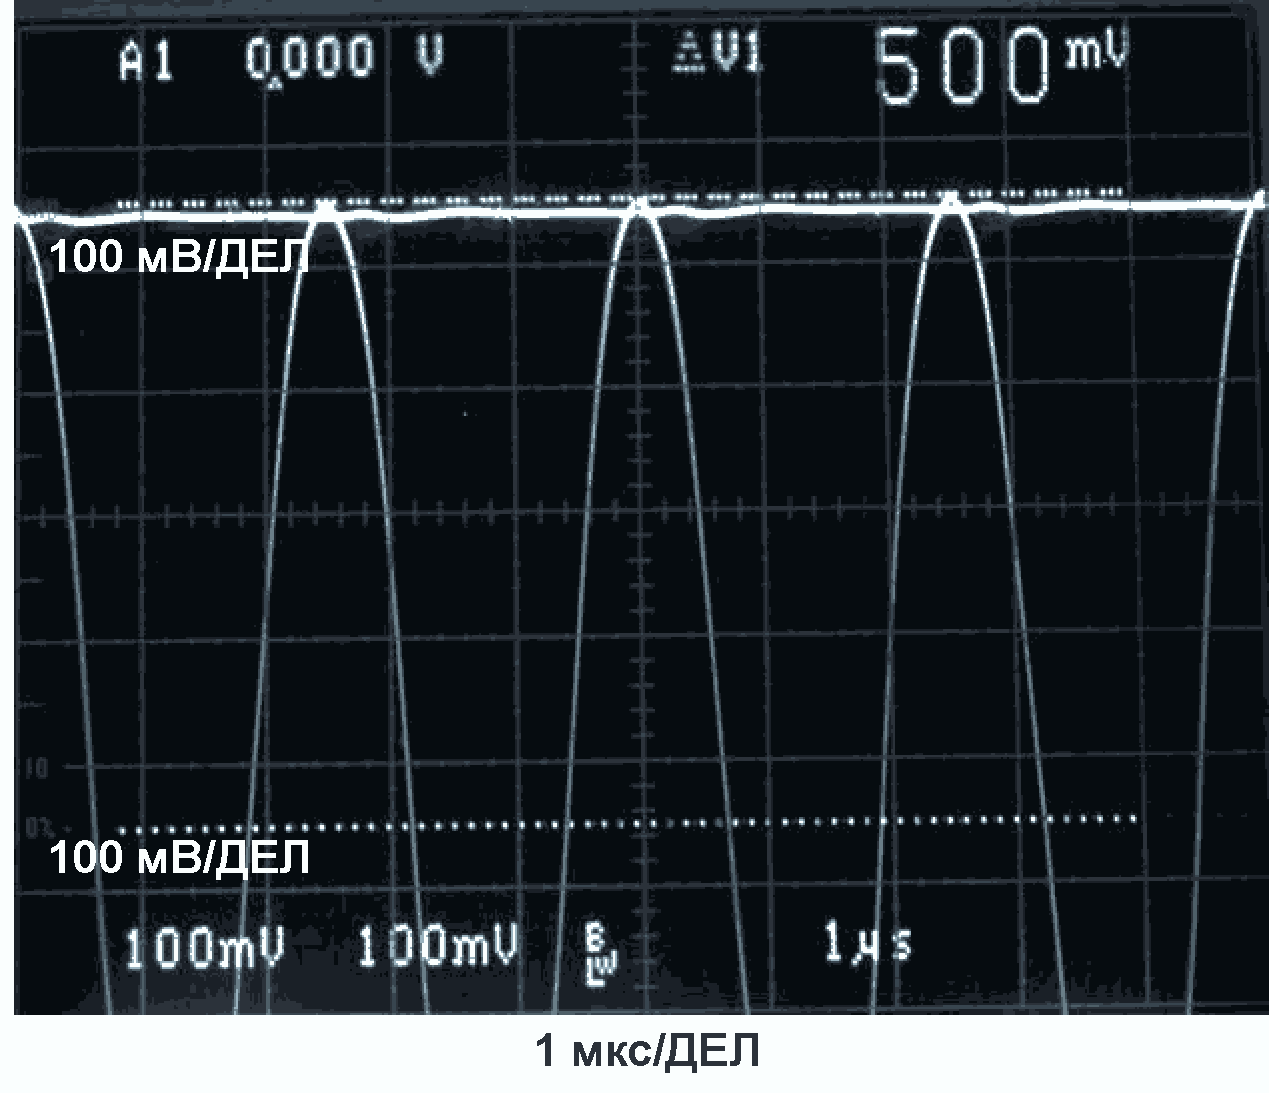 На фотографии экрана осциллографа показаны входные и выходные напряжения для синусоидального сигнала 400 кГц/500 мВ.